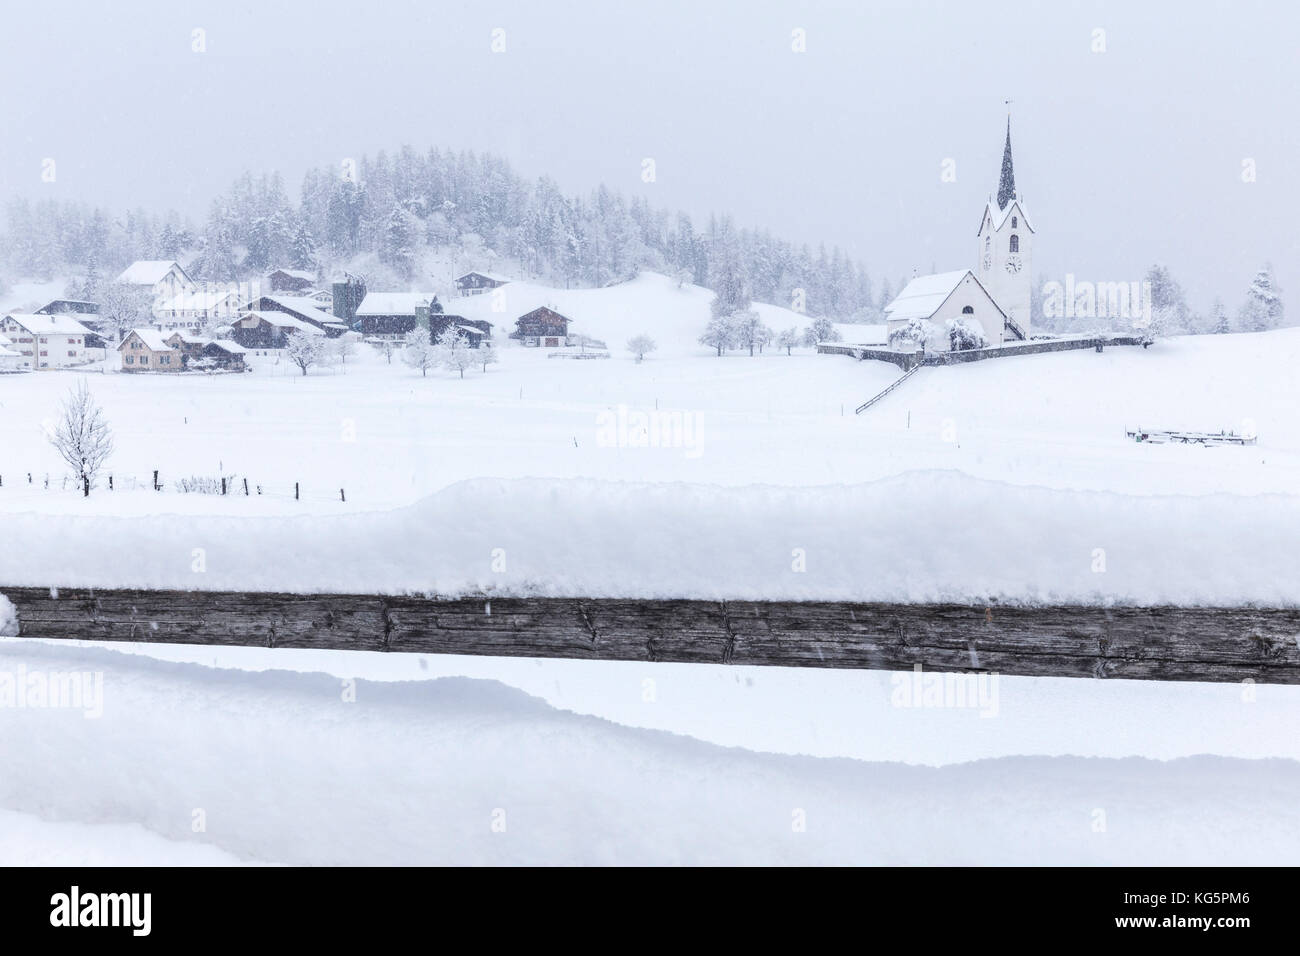 Il piccolo villaggio di Versam con la sua chiesa durante una tempesta invernale. Versam, Safiental, Surselva, Graubunden, Svizzera, Europa Foto Stock